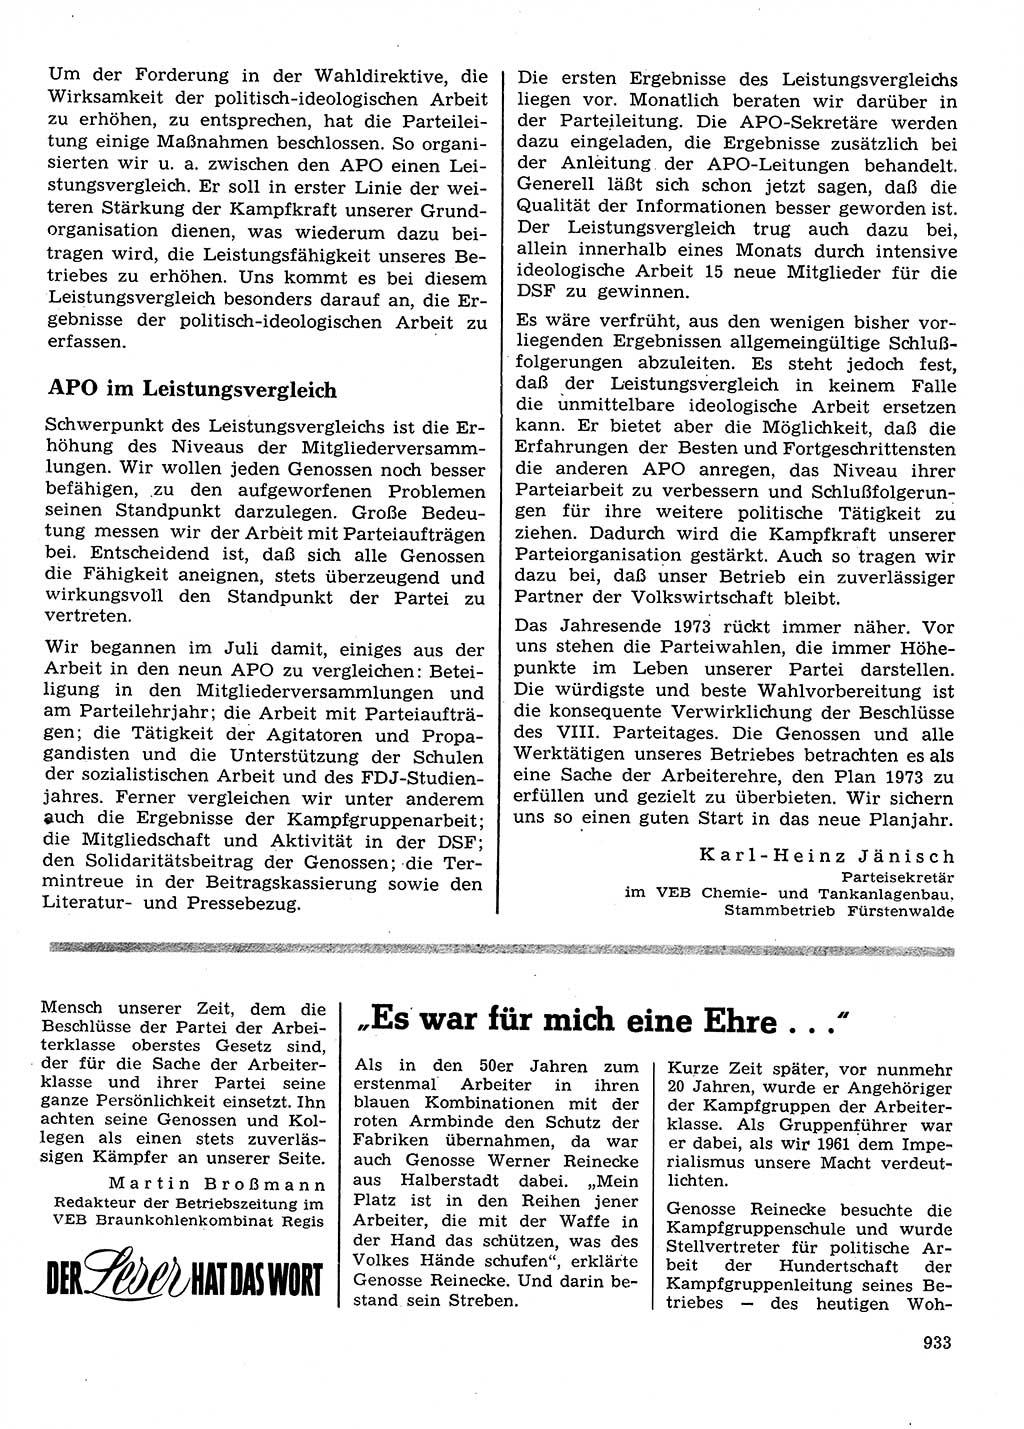 Neuer Weg (NW), Organ des Zentralkomitees (ZK) der SED (Sozialistische Einheitspartei Deutschlands) für Fragen des Parteilebens, 28. Jahrgang [Deutsche Demokratische Republik (DDR)] 1973, Seite 933 (NW ZK SED DDR 1973, S. 933)